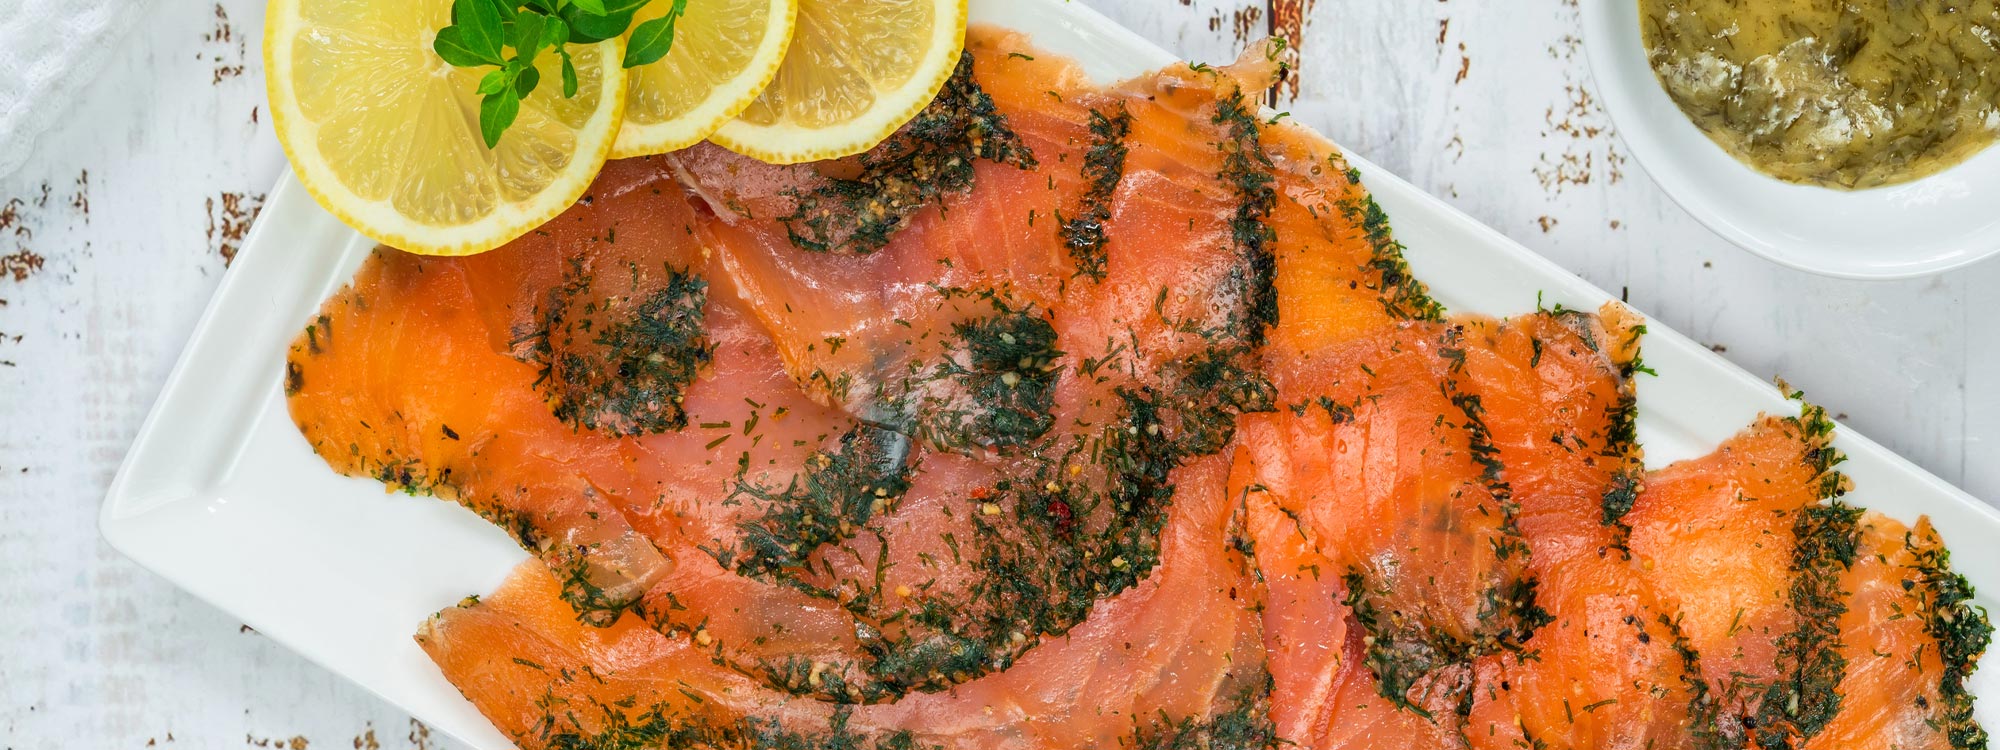 Irischer Lachs in Salzkruste - Spezialitäten aus der irischen Küche